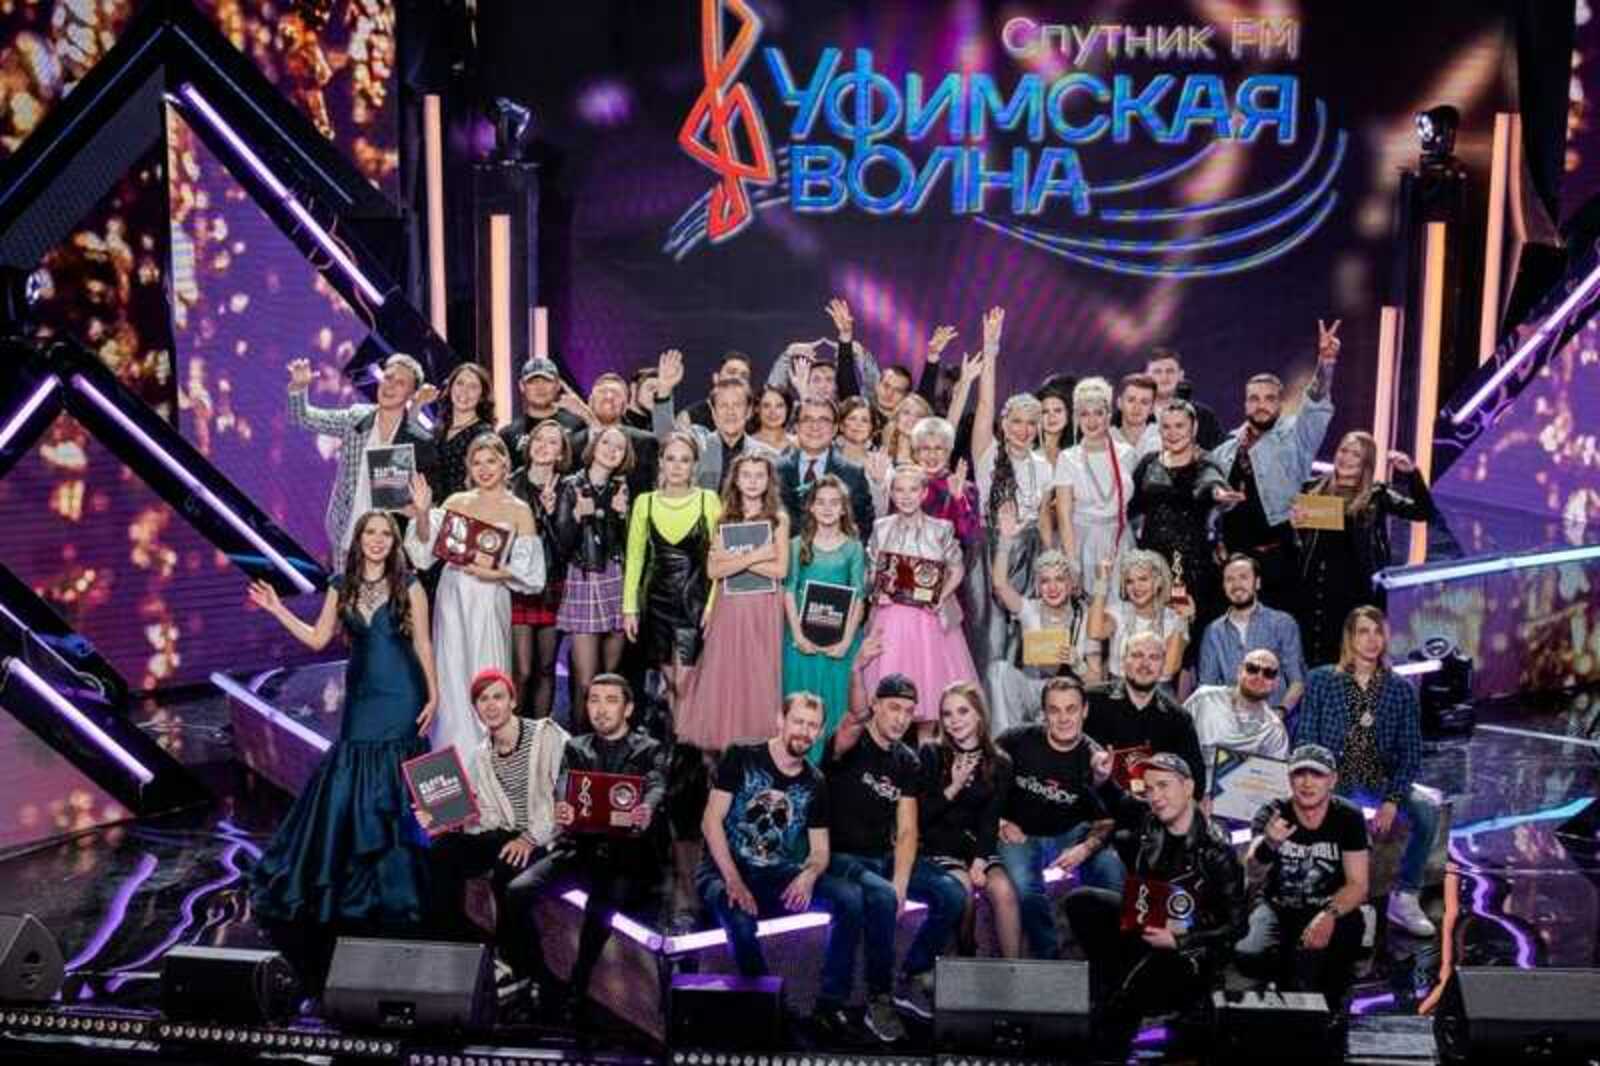 Названы победители десятого юбилейного сезона конкурса «Уфимская Волна 2021»